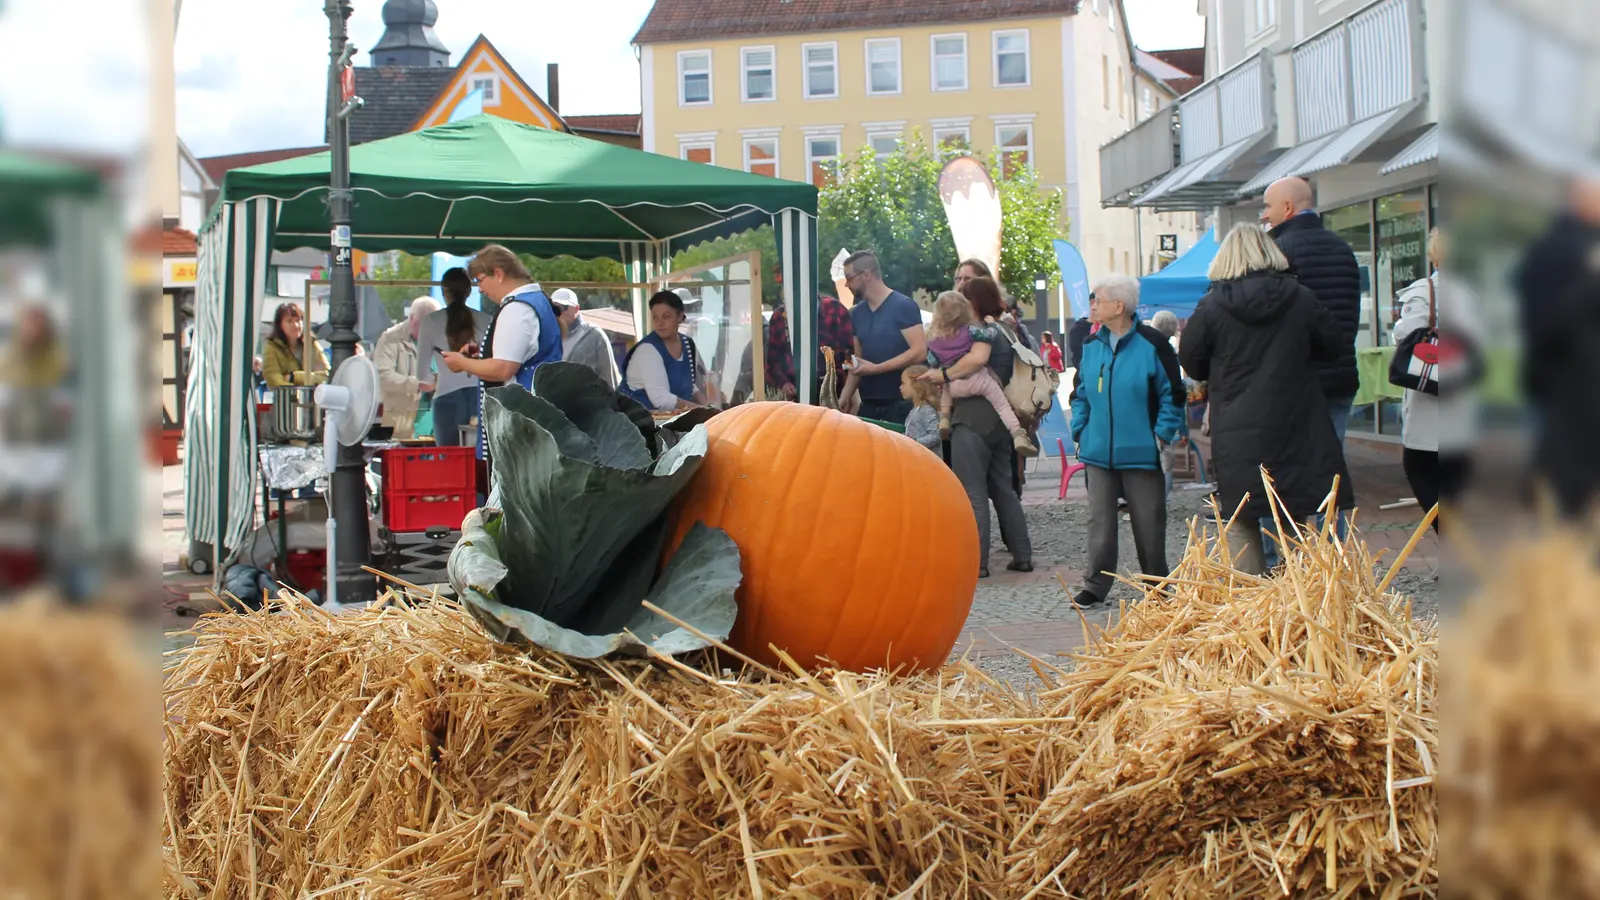 Herbstlich geschmückt lädt die Dornröschenstadt am Sonntag zum traditionellen Herbstmarkt ein. Neben zahlreichen Marktständen haben die Fachgeschäfte in der Innenstadt geöffnet. (Foto: Archiv)